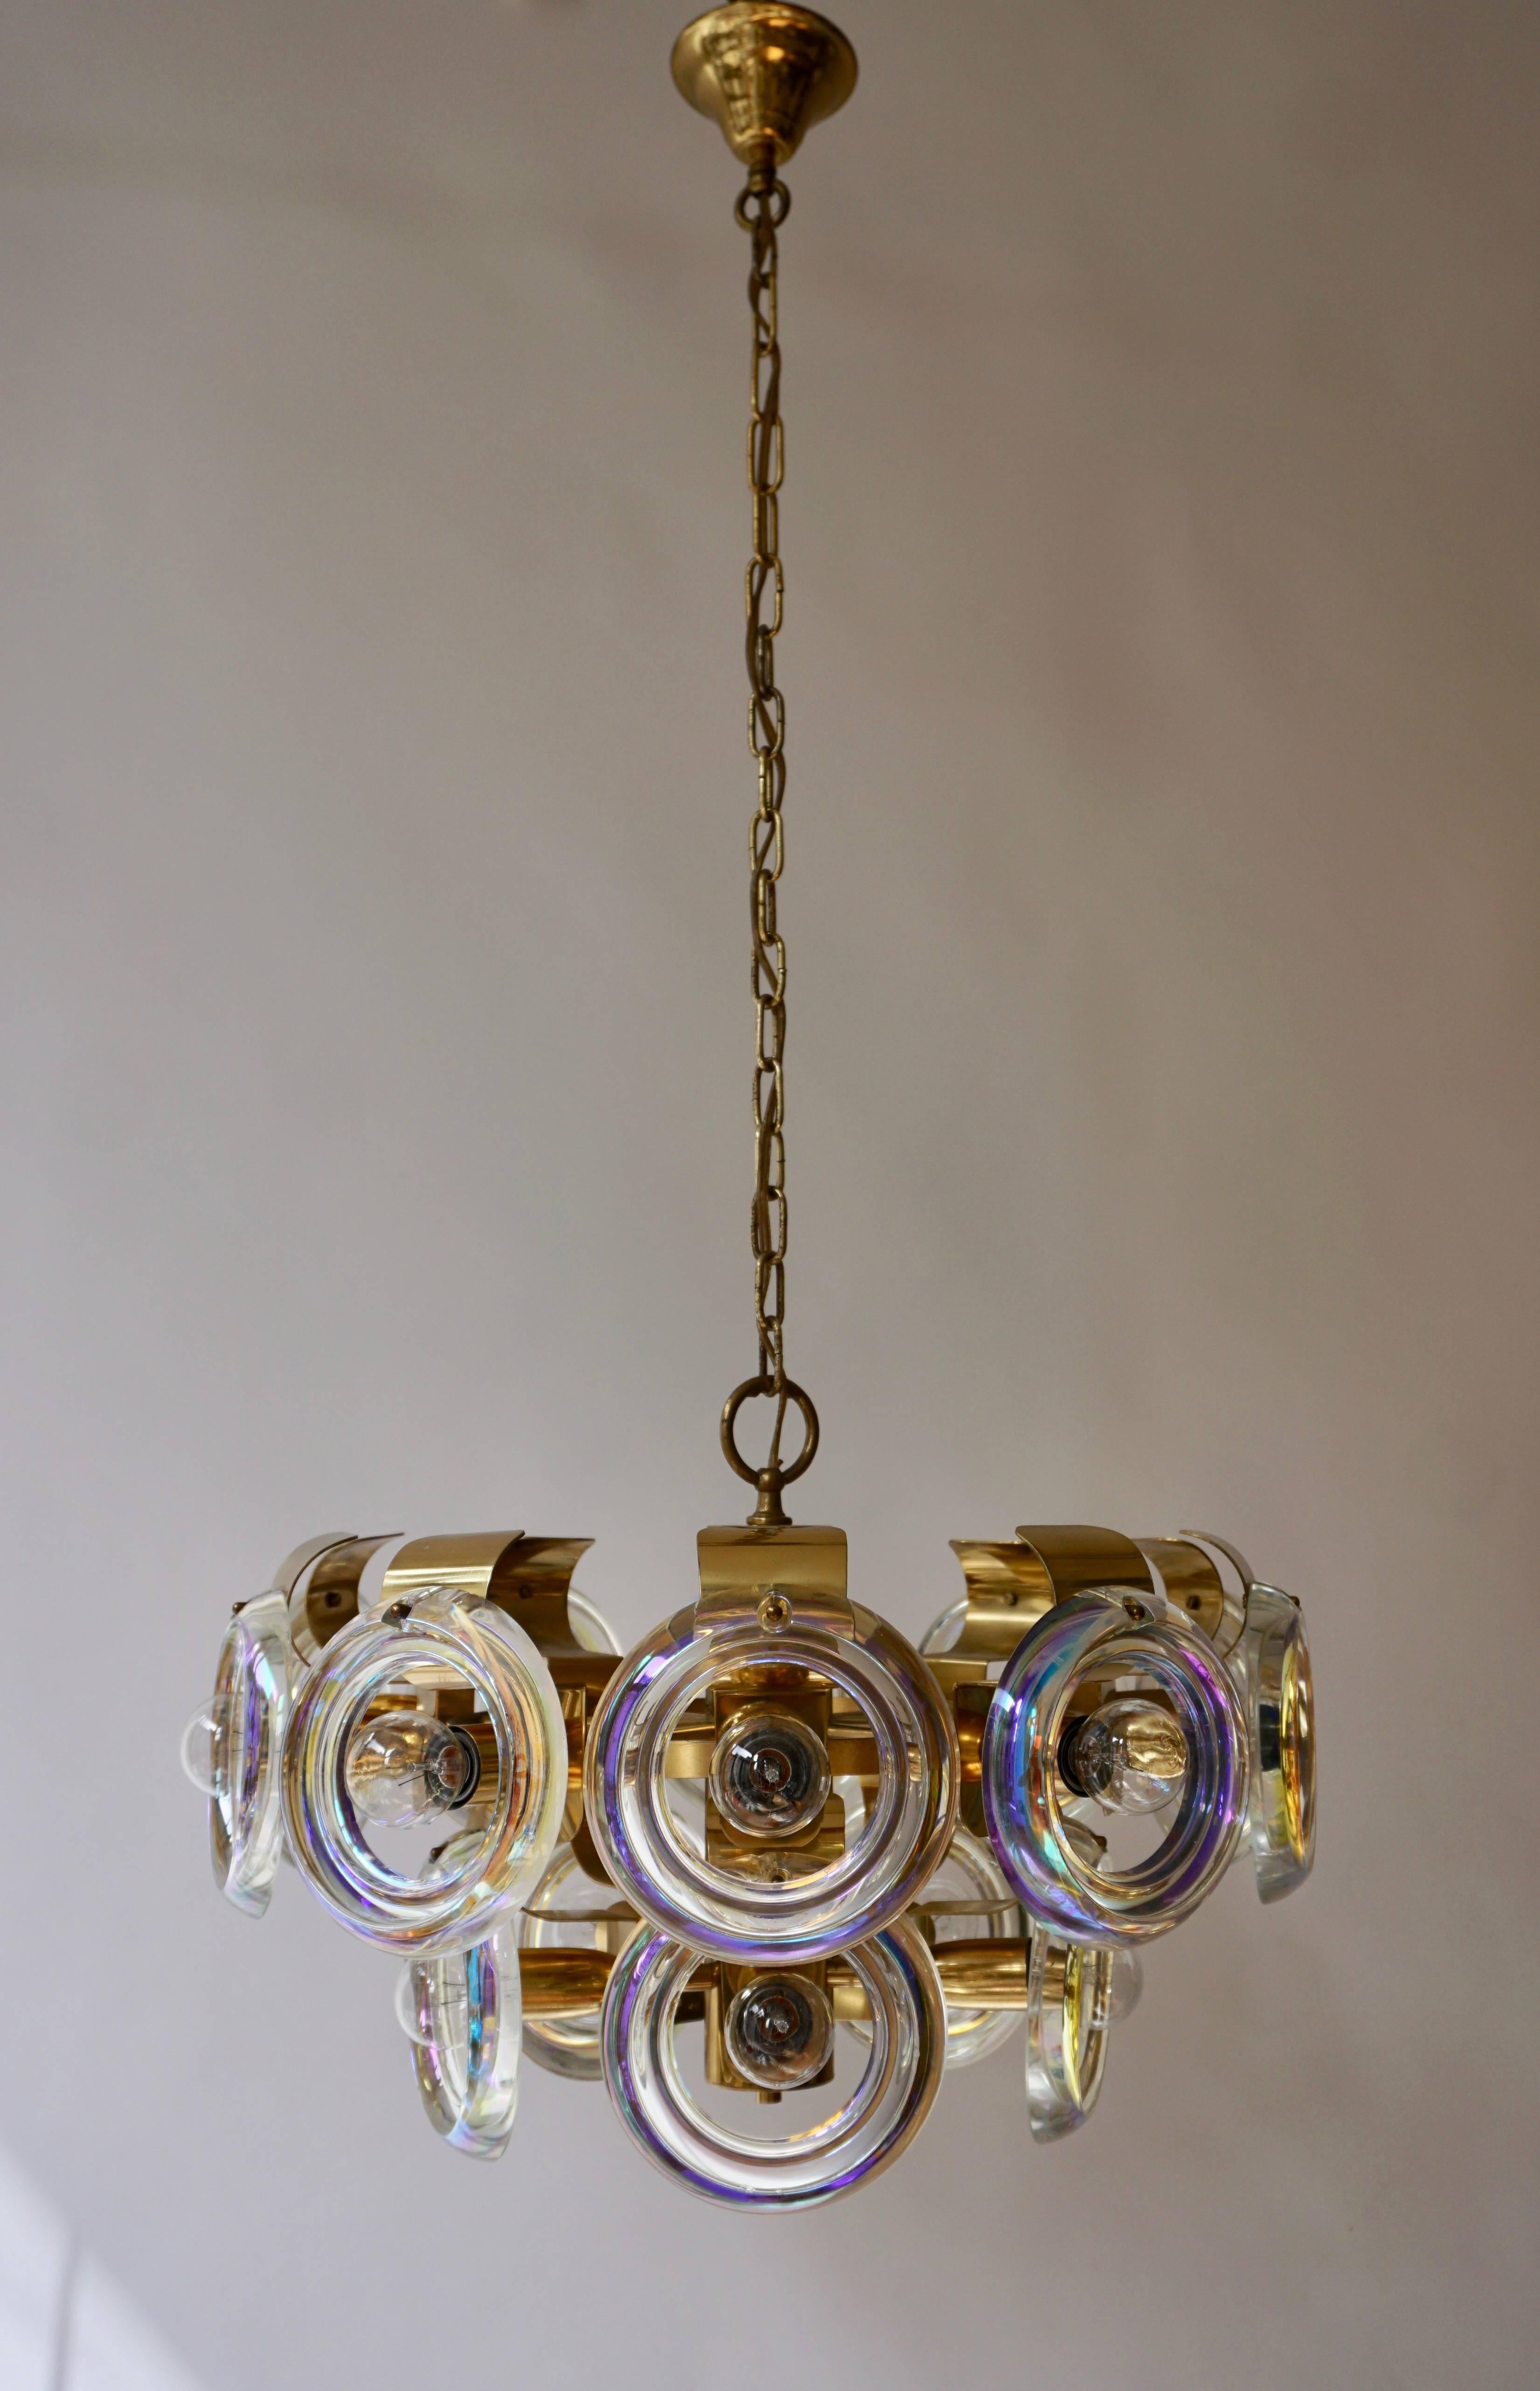 Der Kronleuchter aus italienischem Murano-Glas spendet ein warmes und gemütliches Licht. Die Leuchte verfügt über fünfzehn Lichtquellen von maximal 60 W.
Die Drähte können in jeder gewünschten Länge hergestellt werden.
Maße: Durchmesser 50